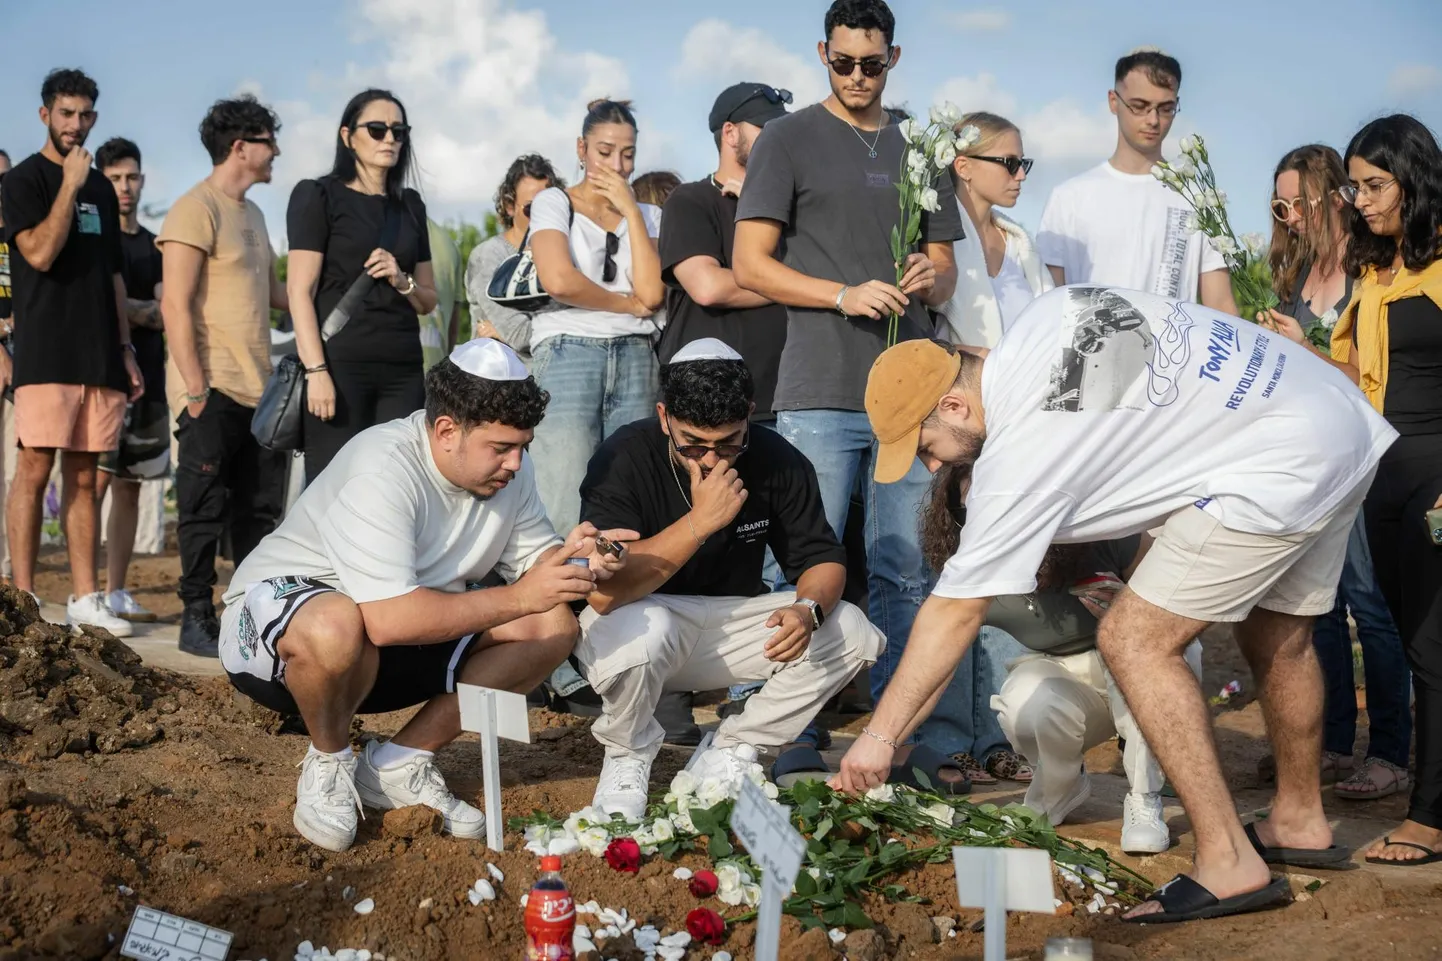 Церемония прощания с Марком Шинделем на седьмой день после похорон. Кладбище в Нетании, Израиль.